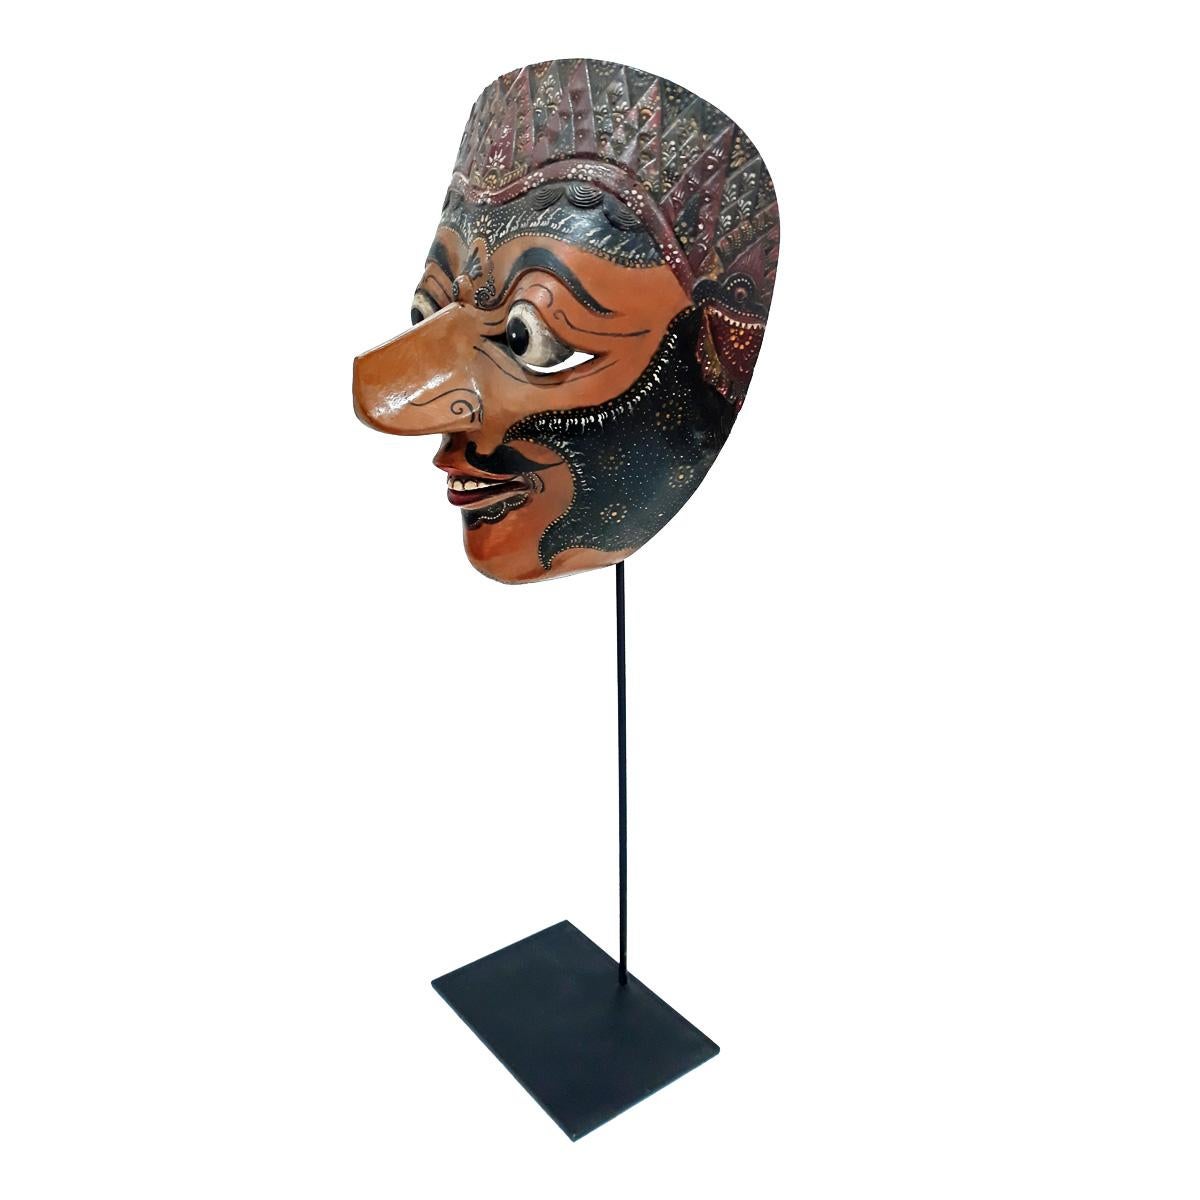 Masque de théâtre vintage de Bali, Indonésie, vers 1975-1980. 
Teck polychrome sculpté à la main, monté sur un socle en métal noir.

Ce type de masque est utilisé lors des danses indonésiennes Topeng ou théâtre des masques, où des histoires